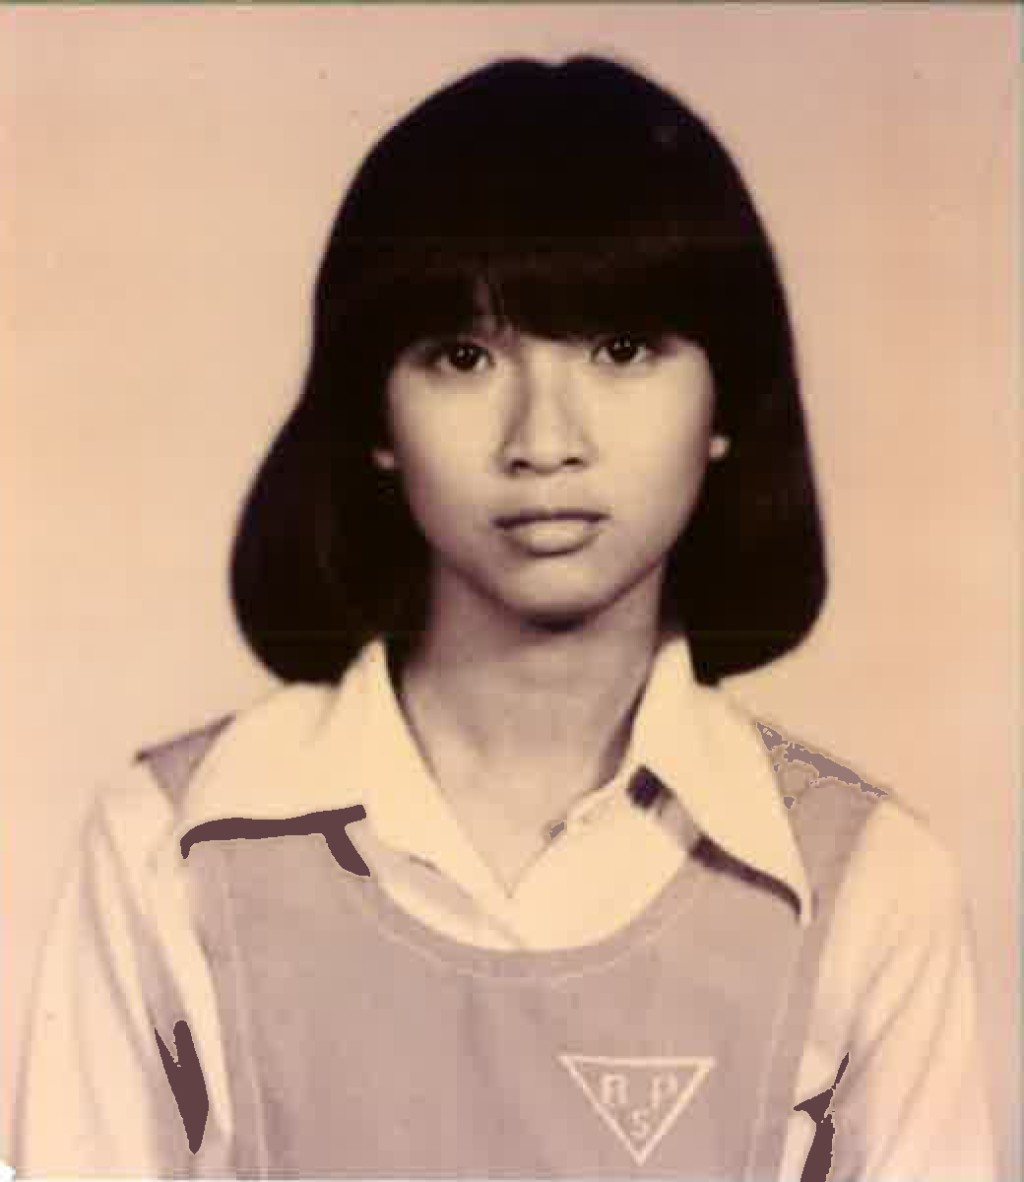 卢敏仪中学时期的照片。